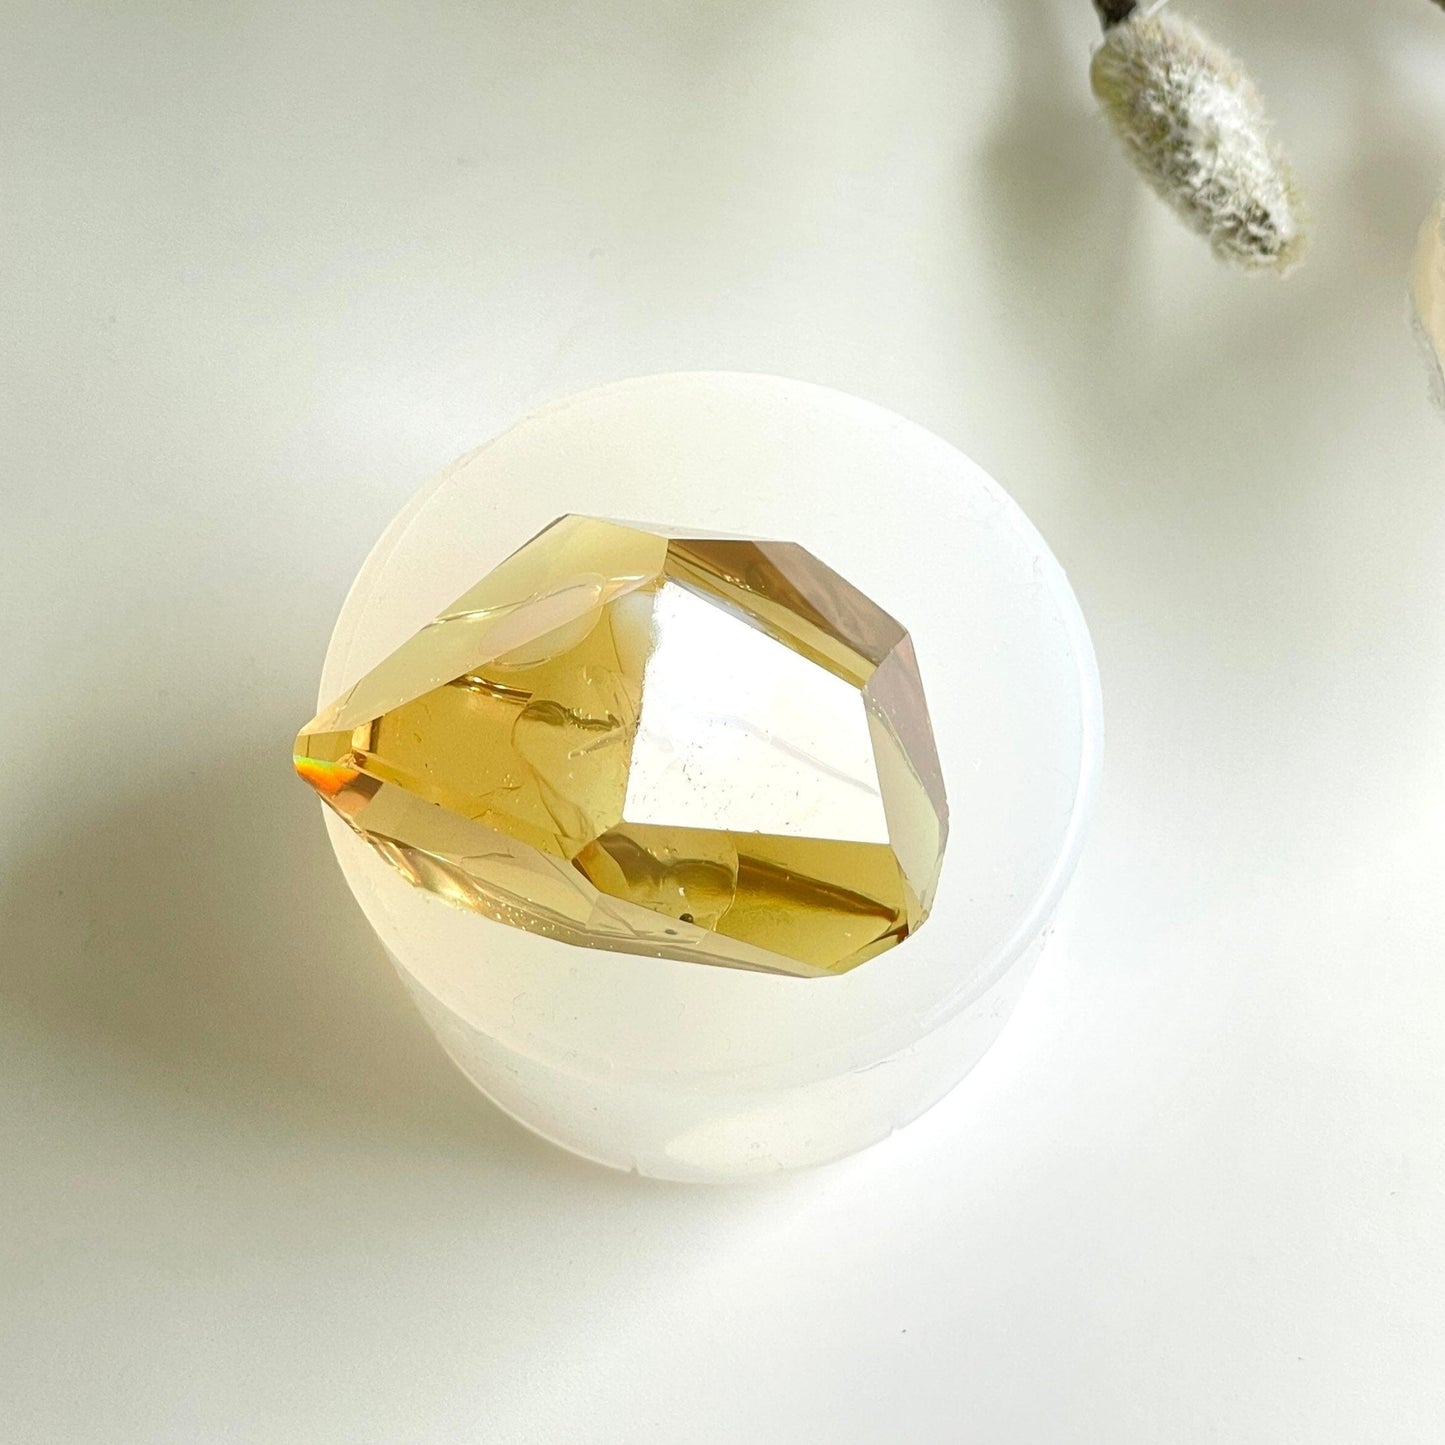 Große Amethyst-Kristall-Silikonform: Schmuckherstellung und personalisierte Geschenke